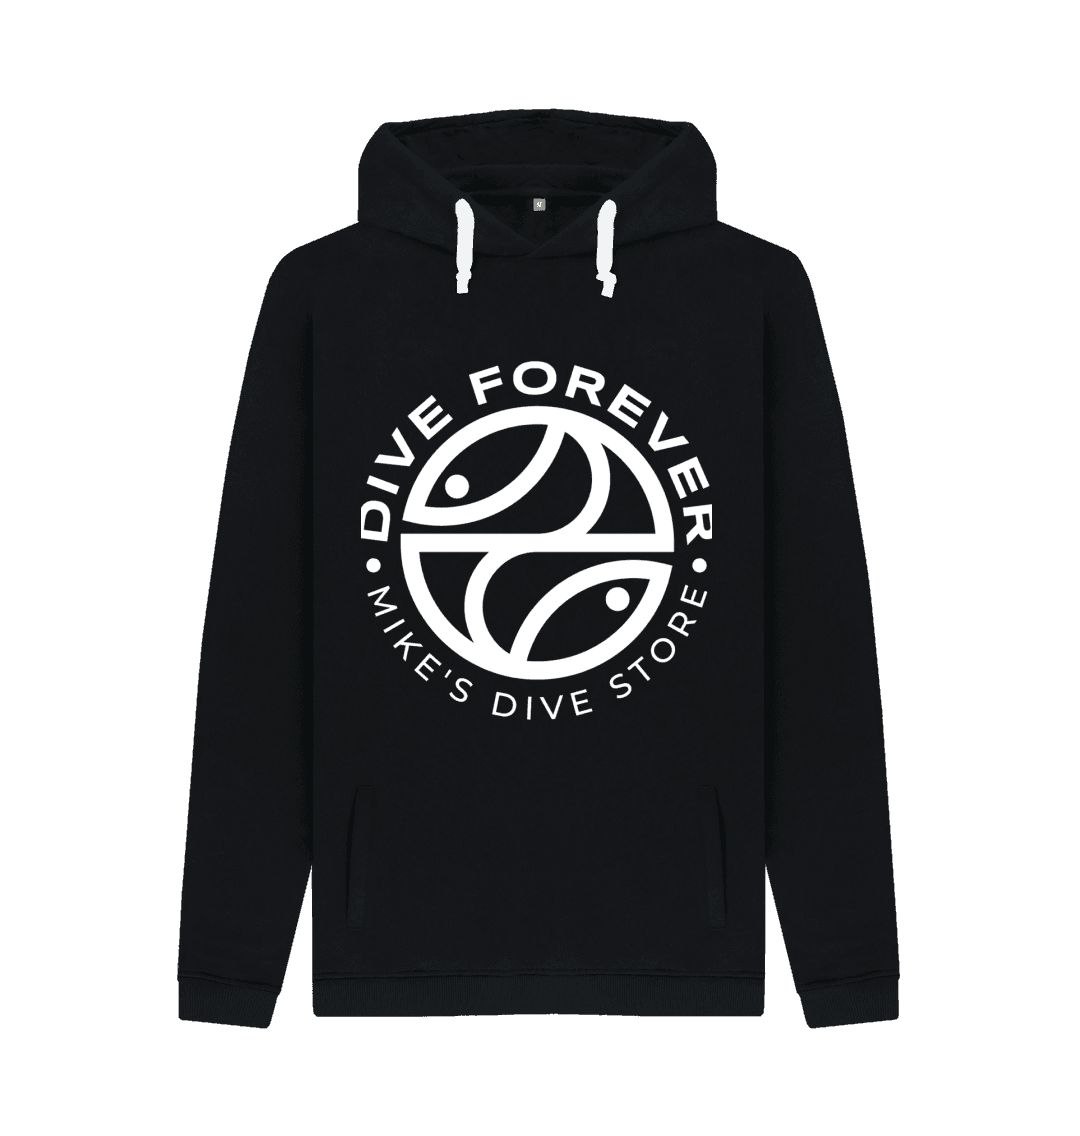 Dive forever hoodie - Black